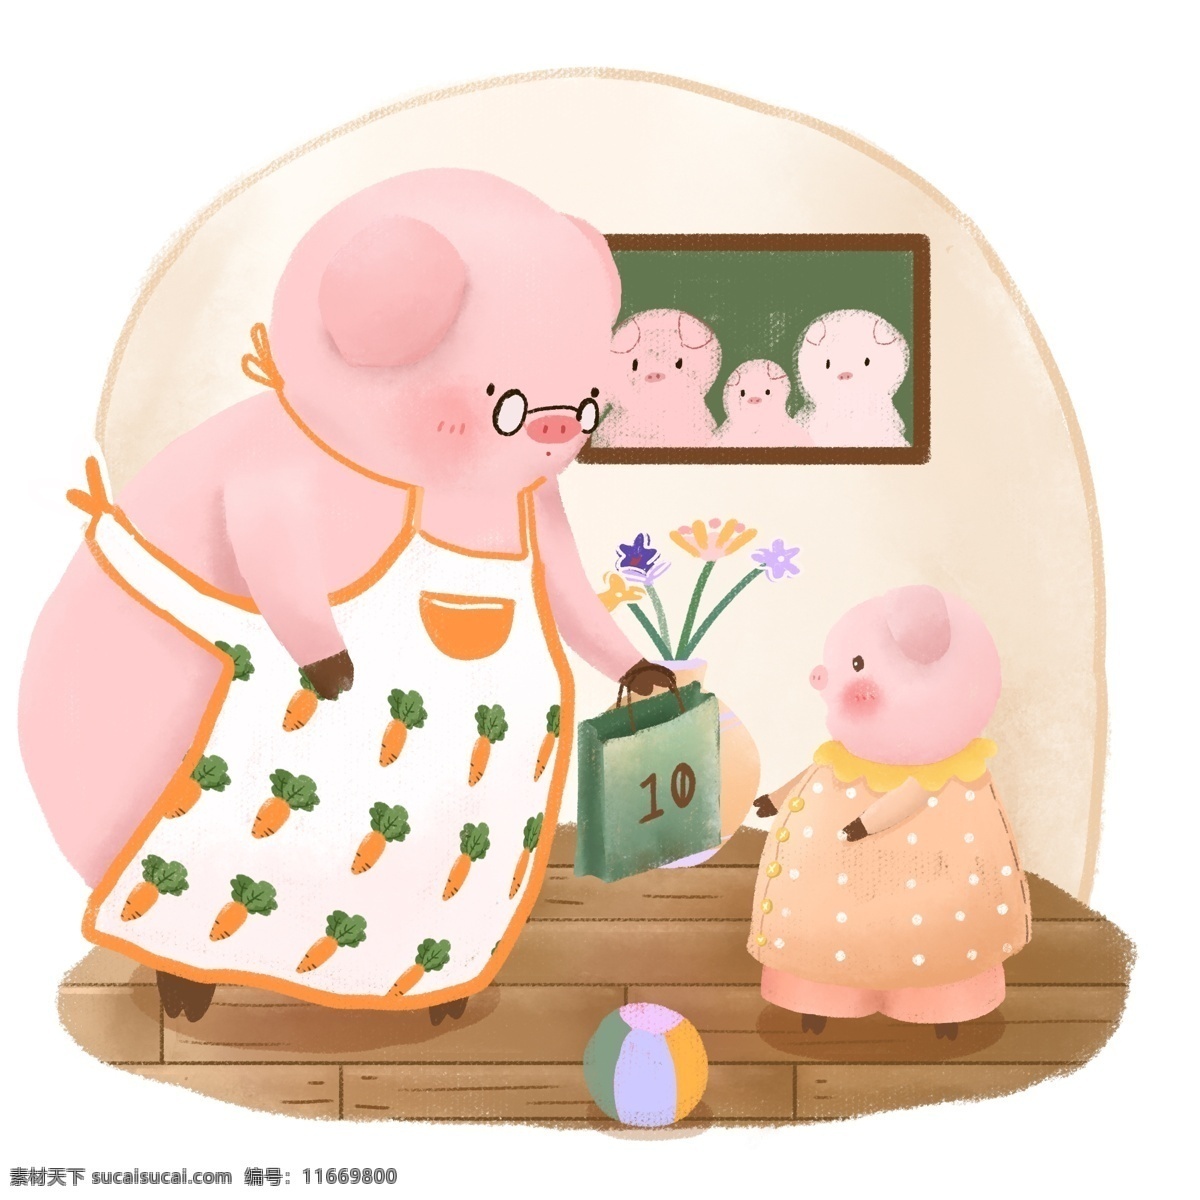 生肖 动物 猪 礼物 卡通 可爱 儿童 手绘 插画 元素 卡通可爱